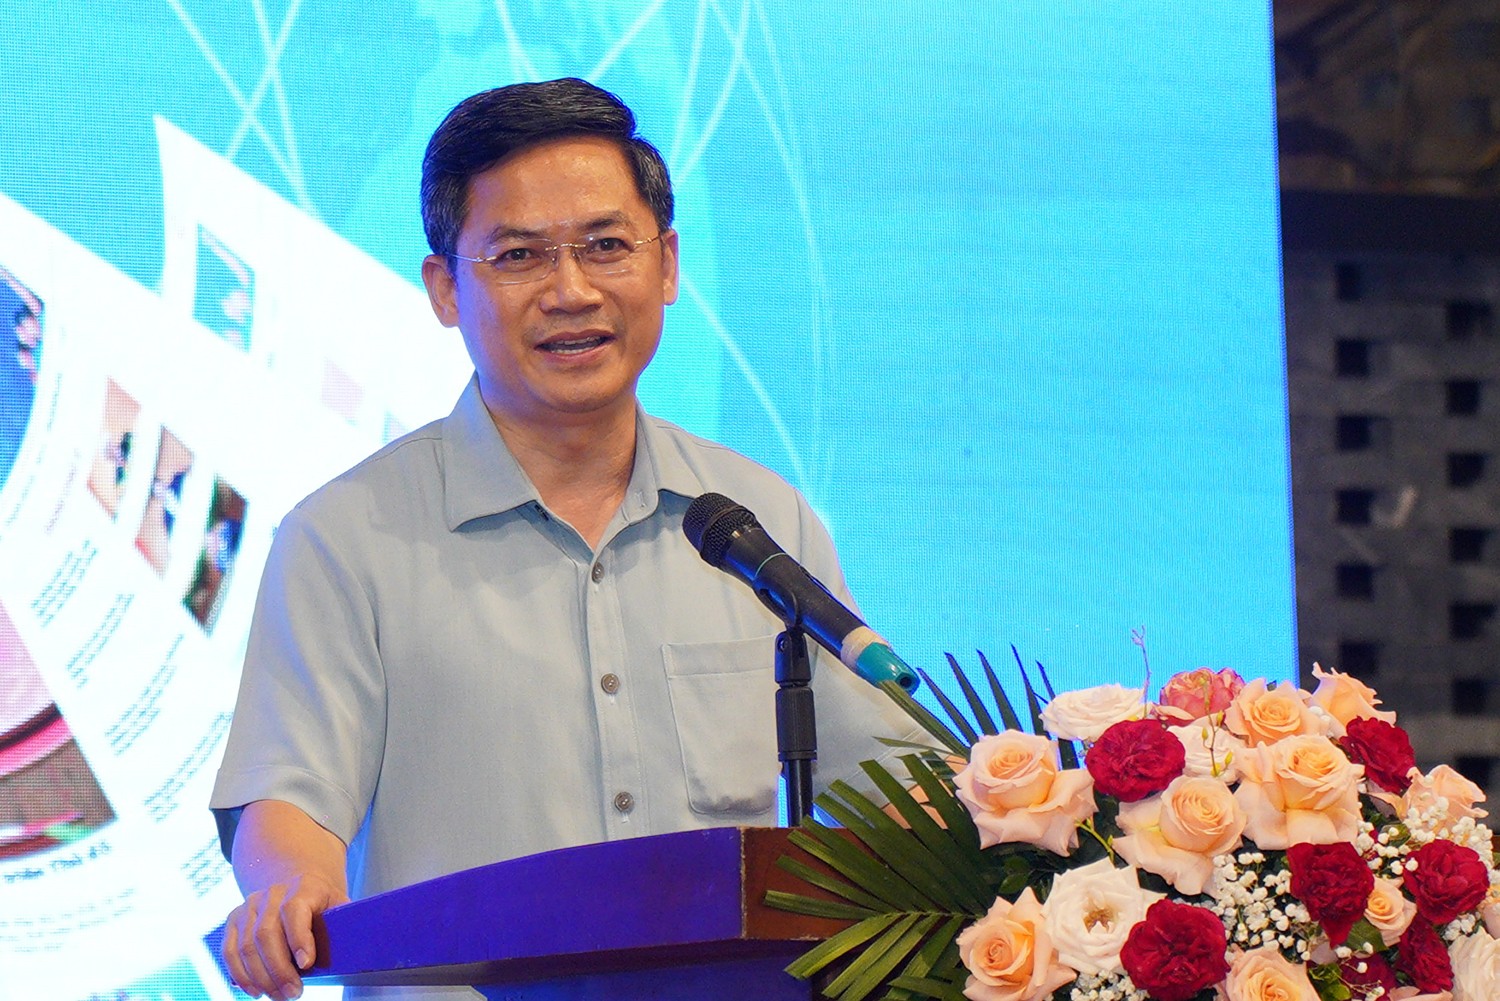 Đồng chí Hà Minh Hải - Thành ủy viên, Phó Chủ tịch UBND thành phố Hà Nội phát biểu chỉ đạo tại buổi lễ